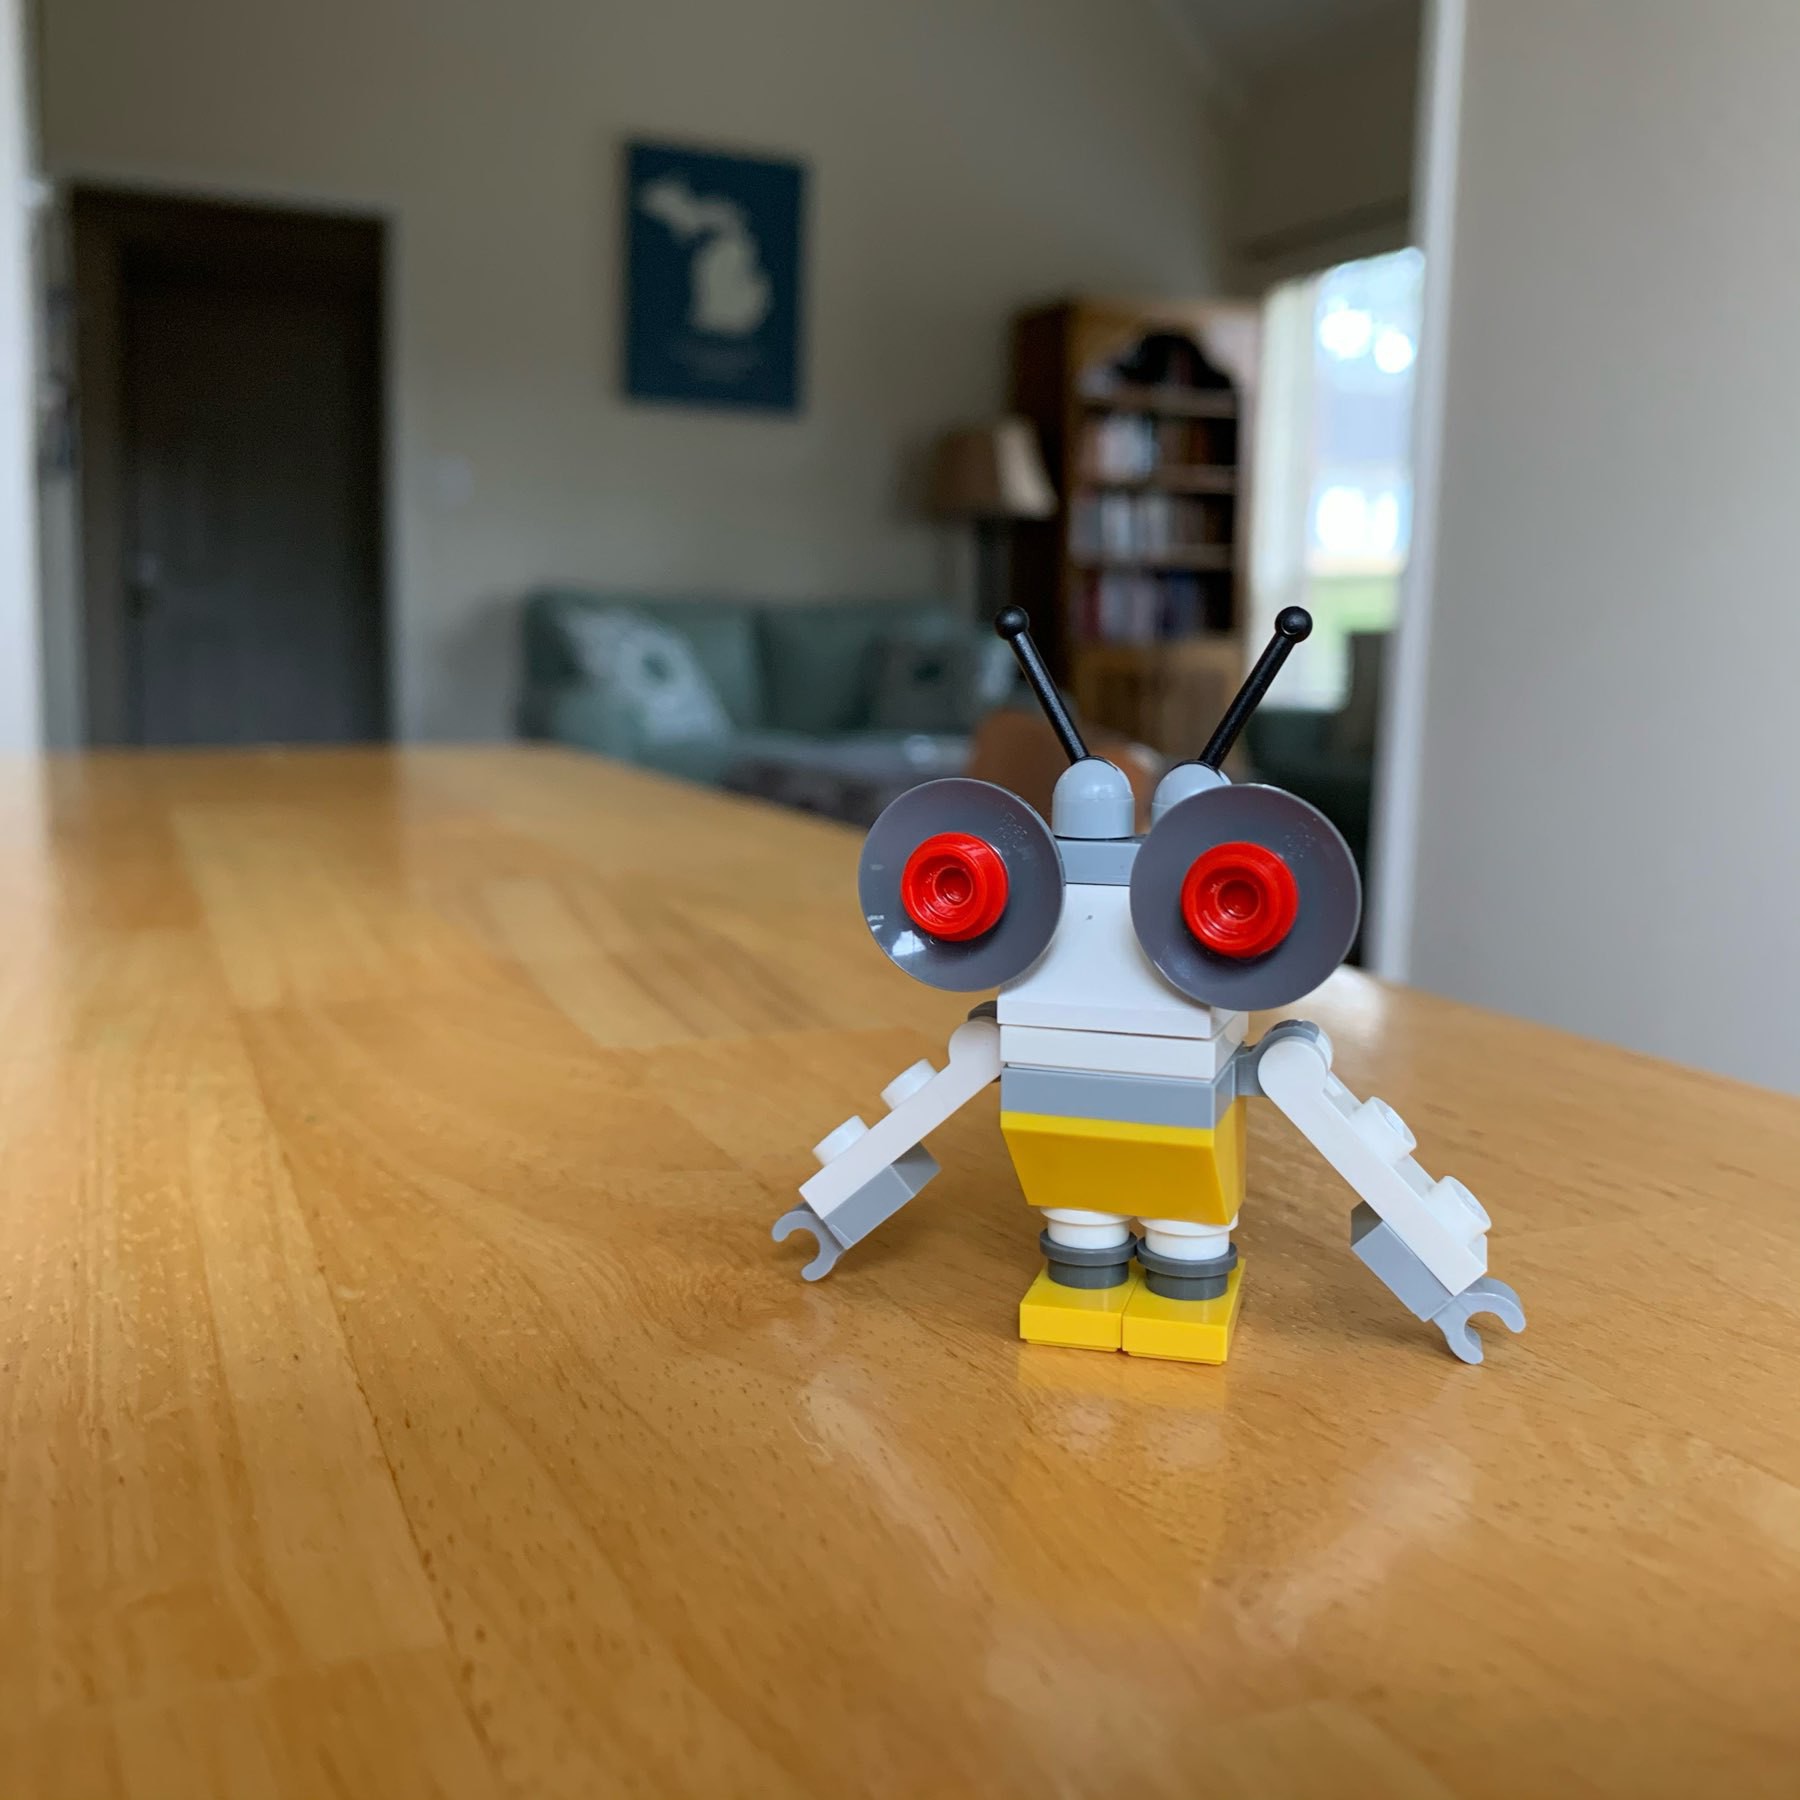 Buzzer the LEGO robot